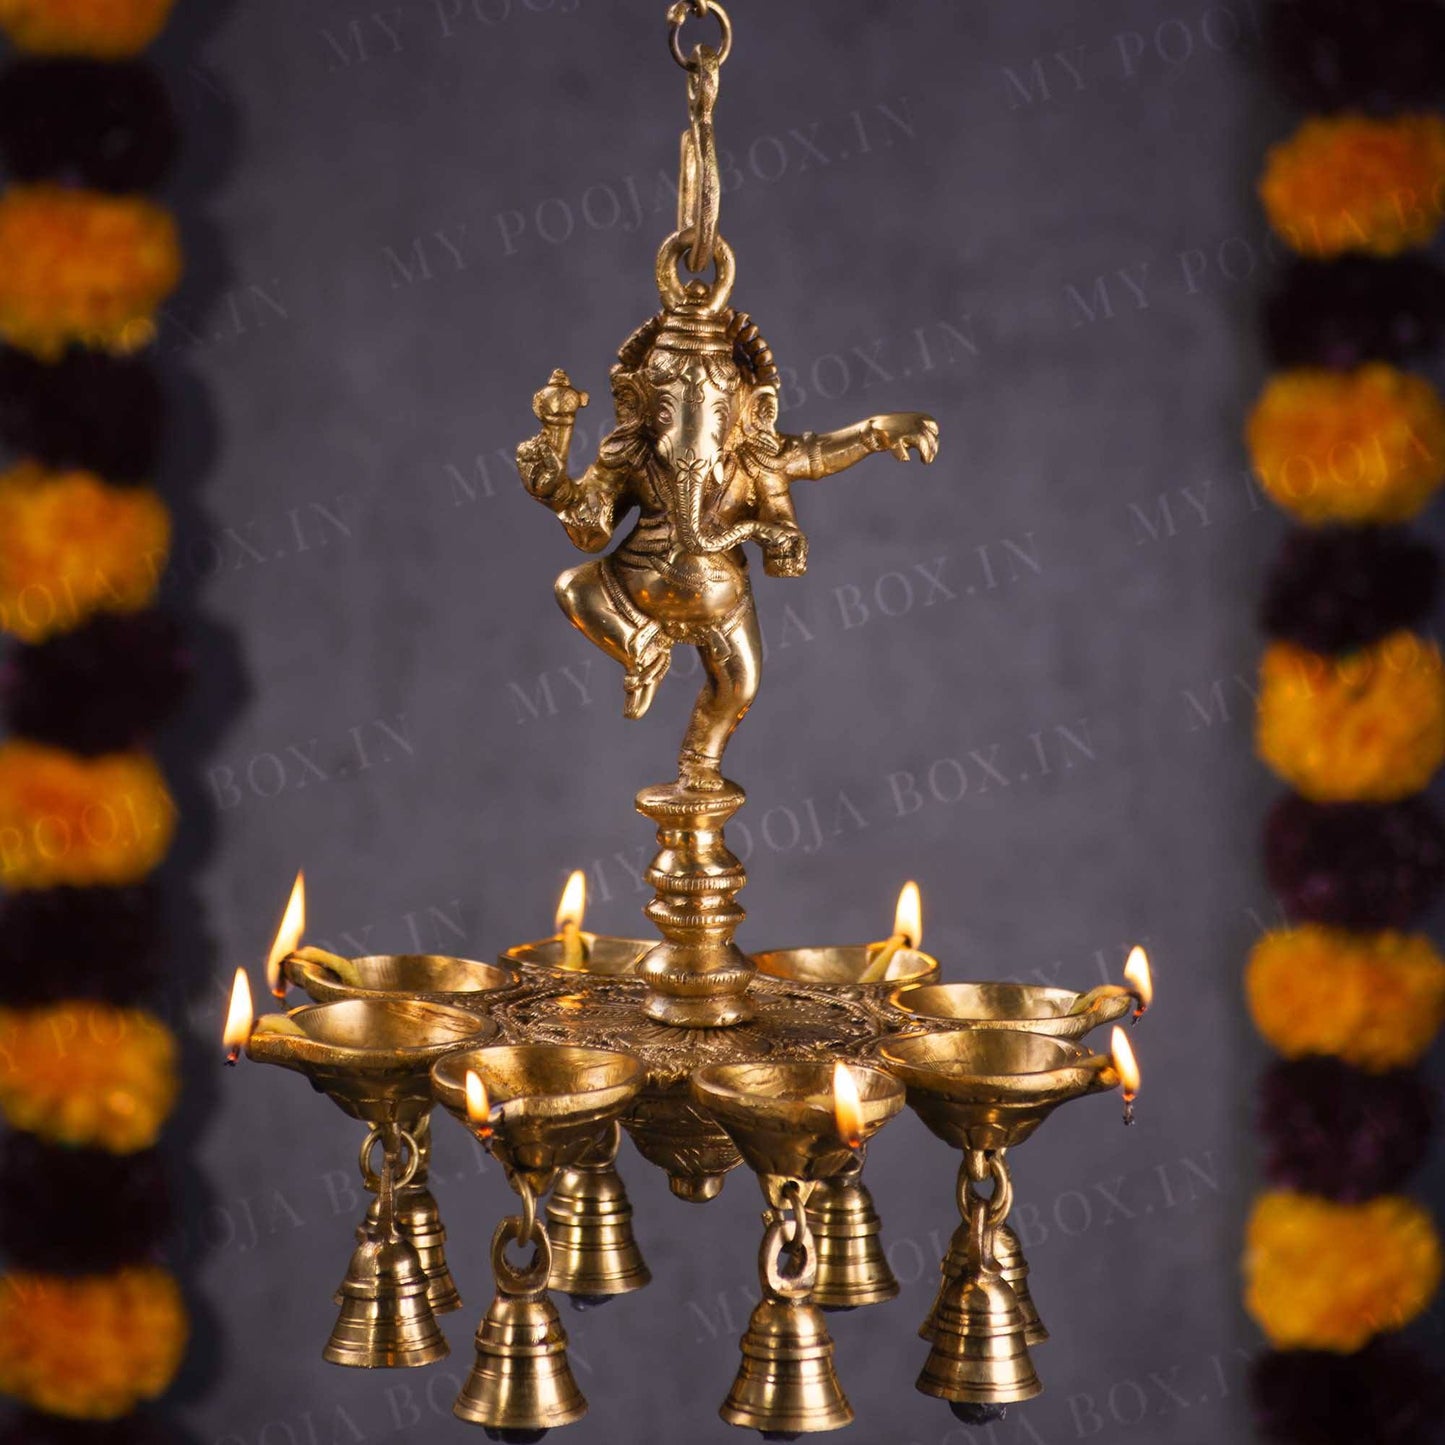 Antique Brass Dancing Ganesha Hanging Diya